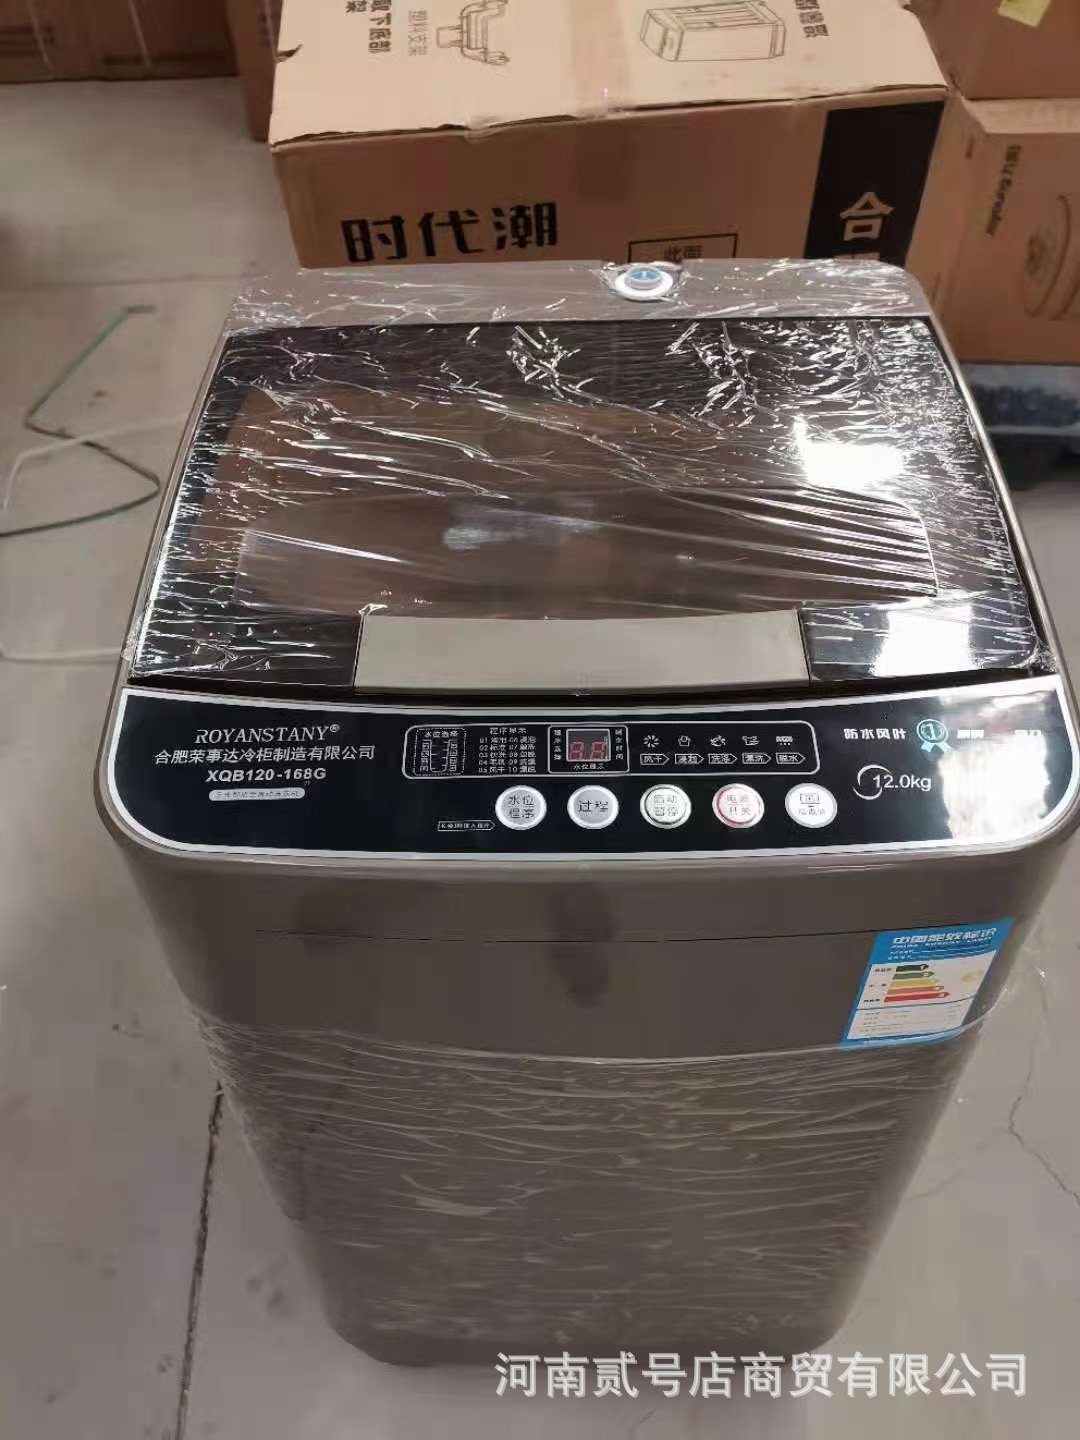 12kg Blu-Ray Automatic Washing Machine